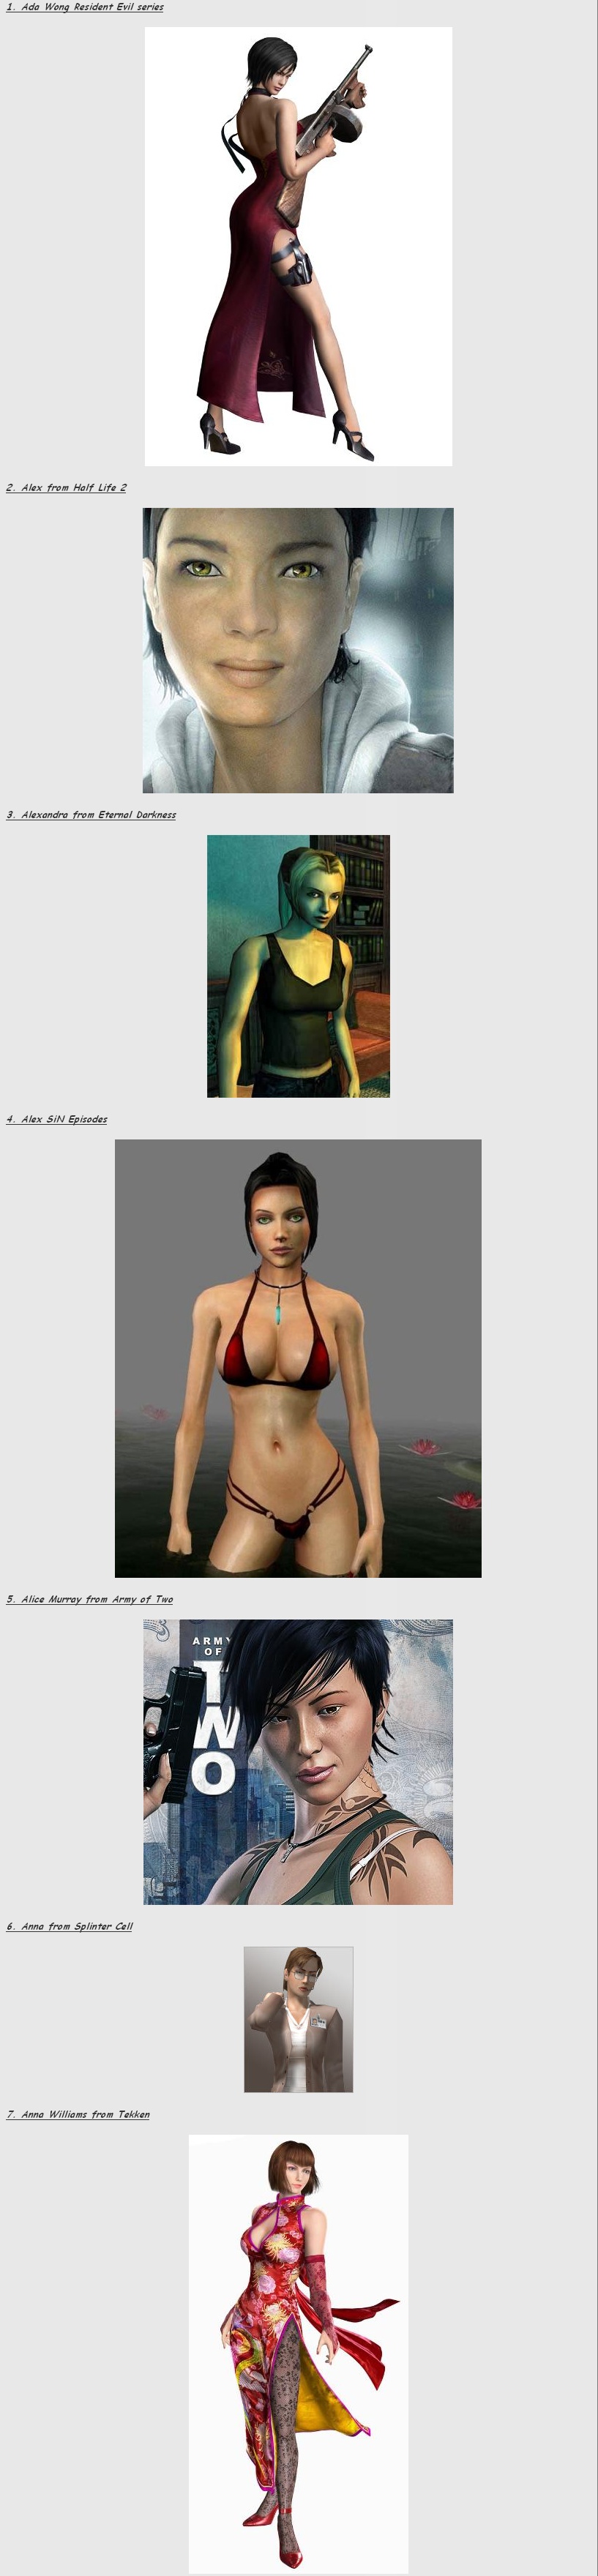 게임속에[여성캐릭터]섹시.인기70순위 | 플레이스테이션 정보 | Ruliweb